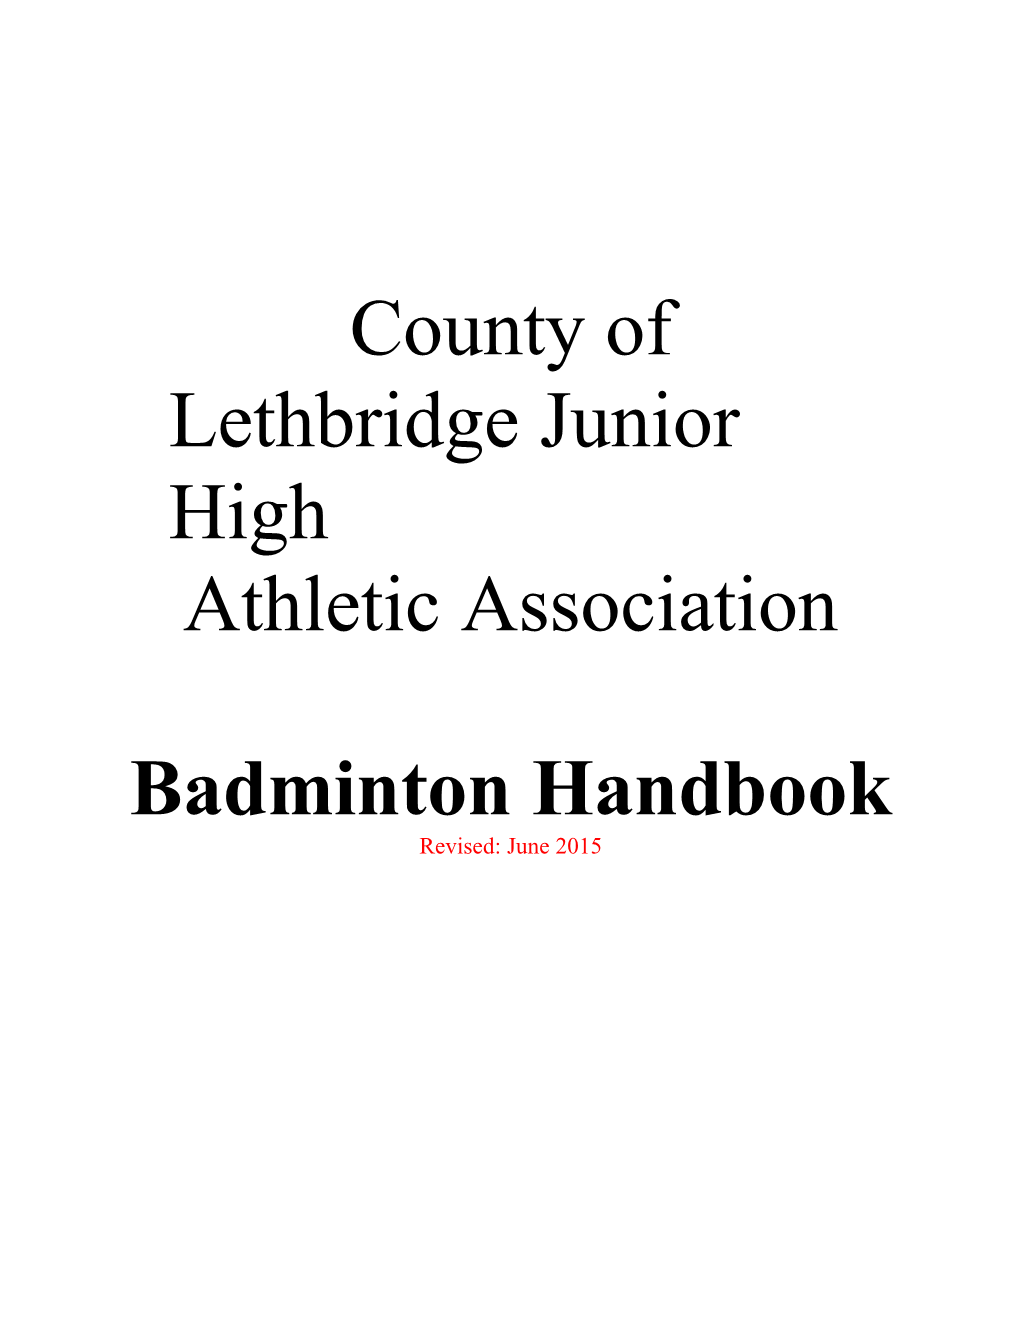 BADMINTON HANDBOOK Revised June, 2015 - Page 1